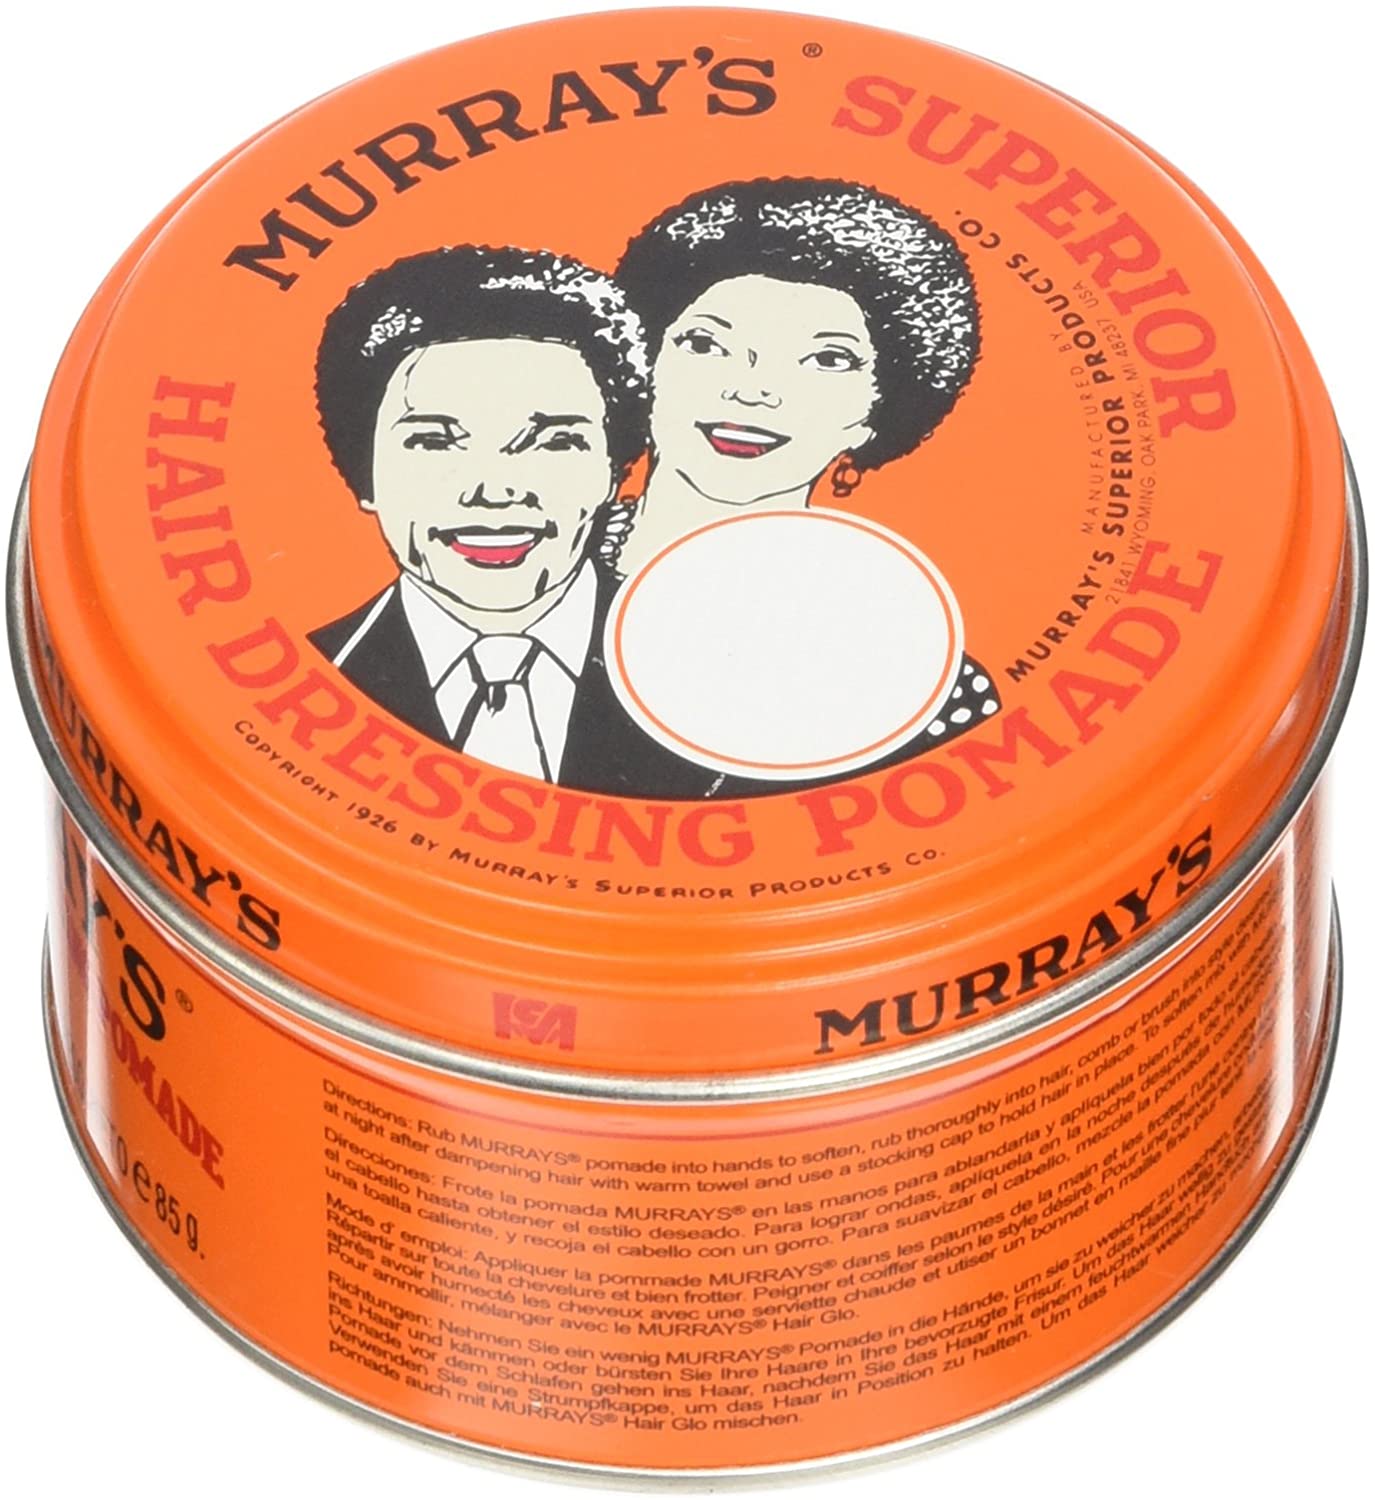 Murray's hair pomade regular 3oz